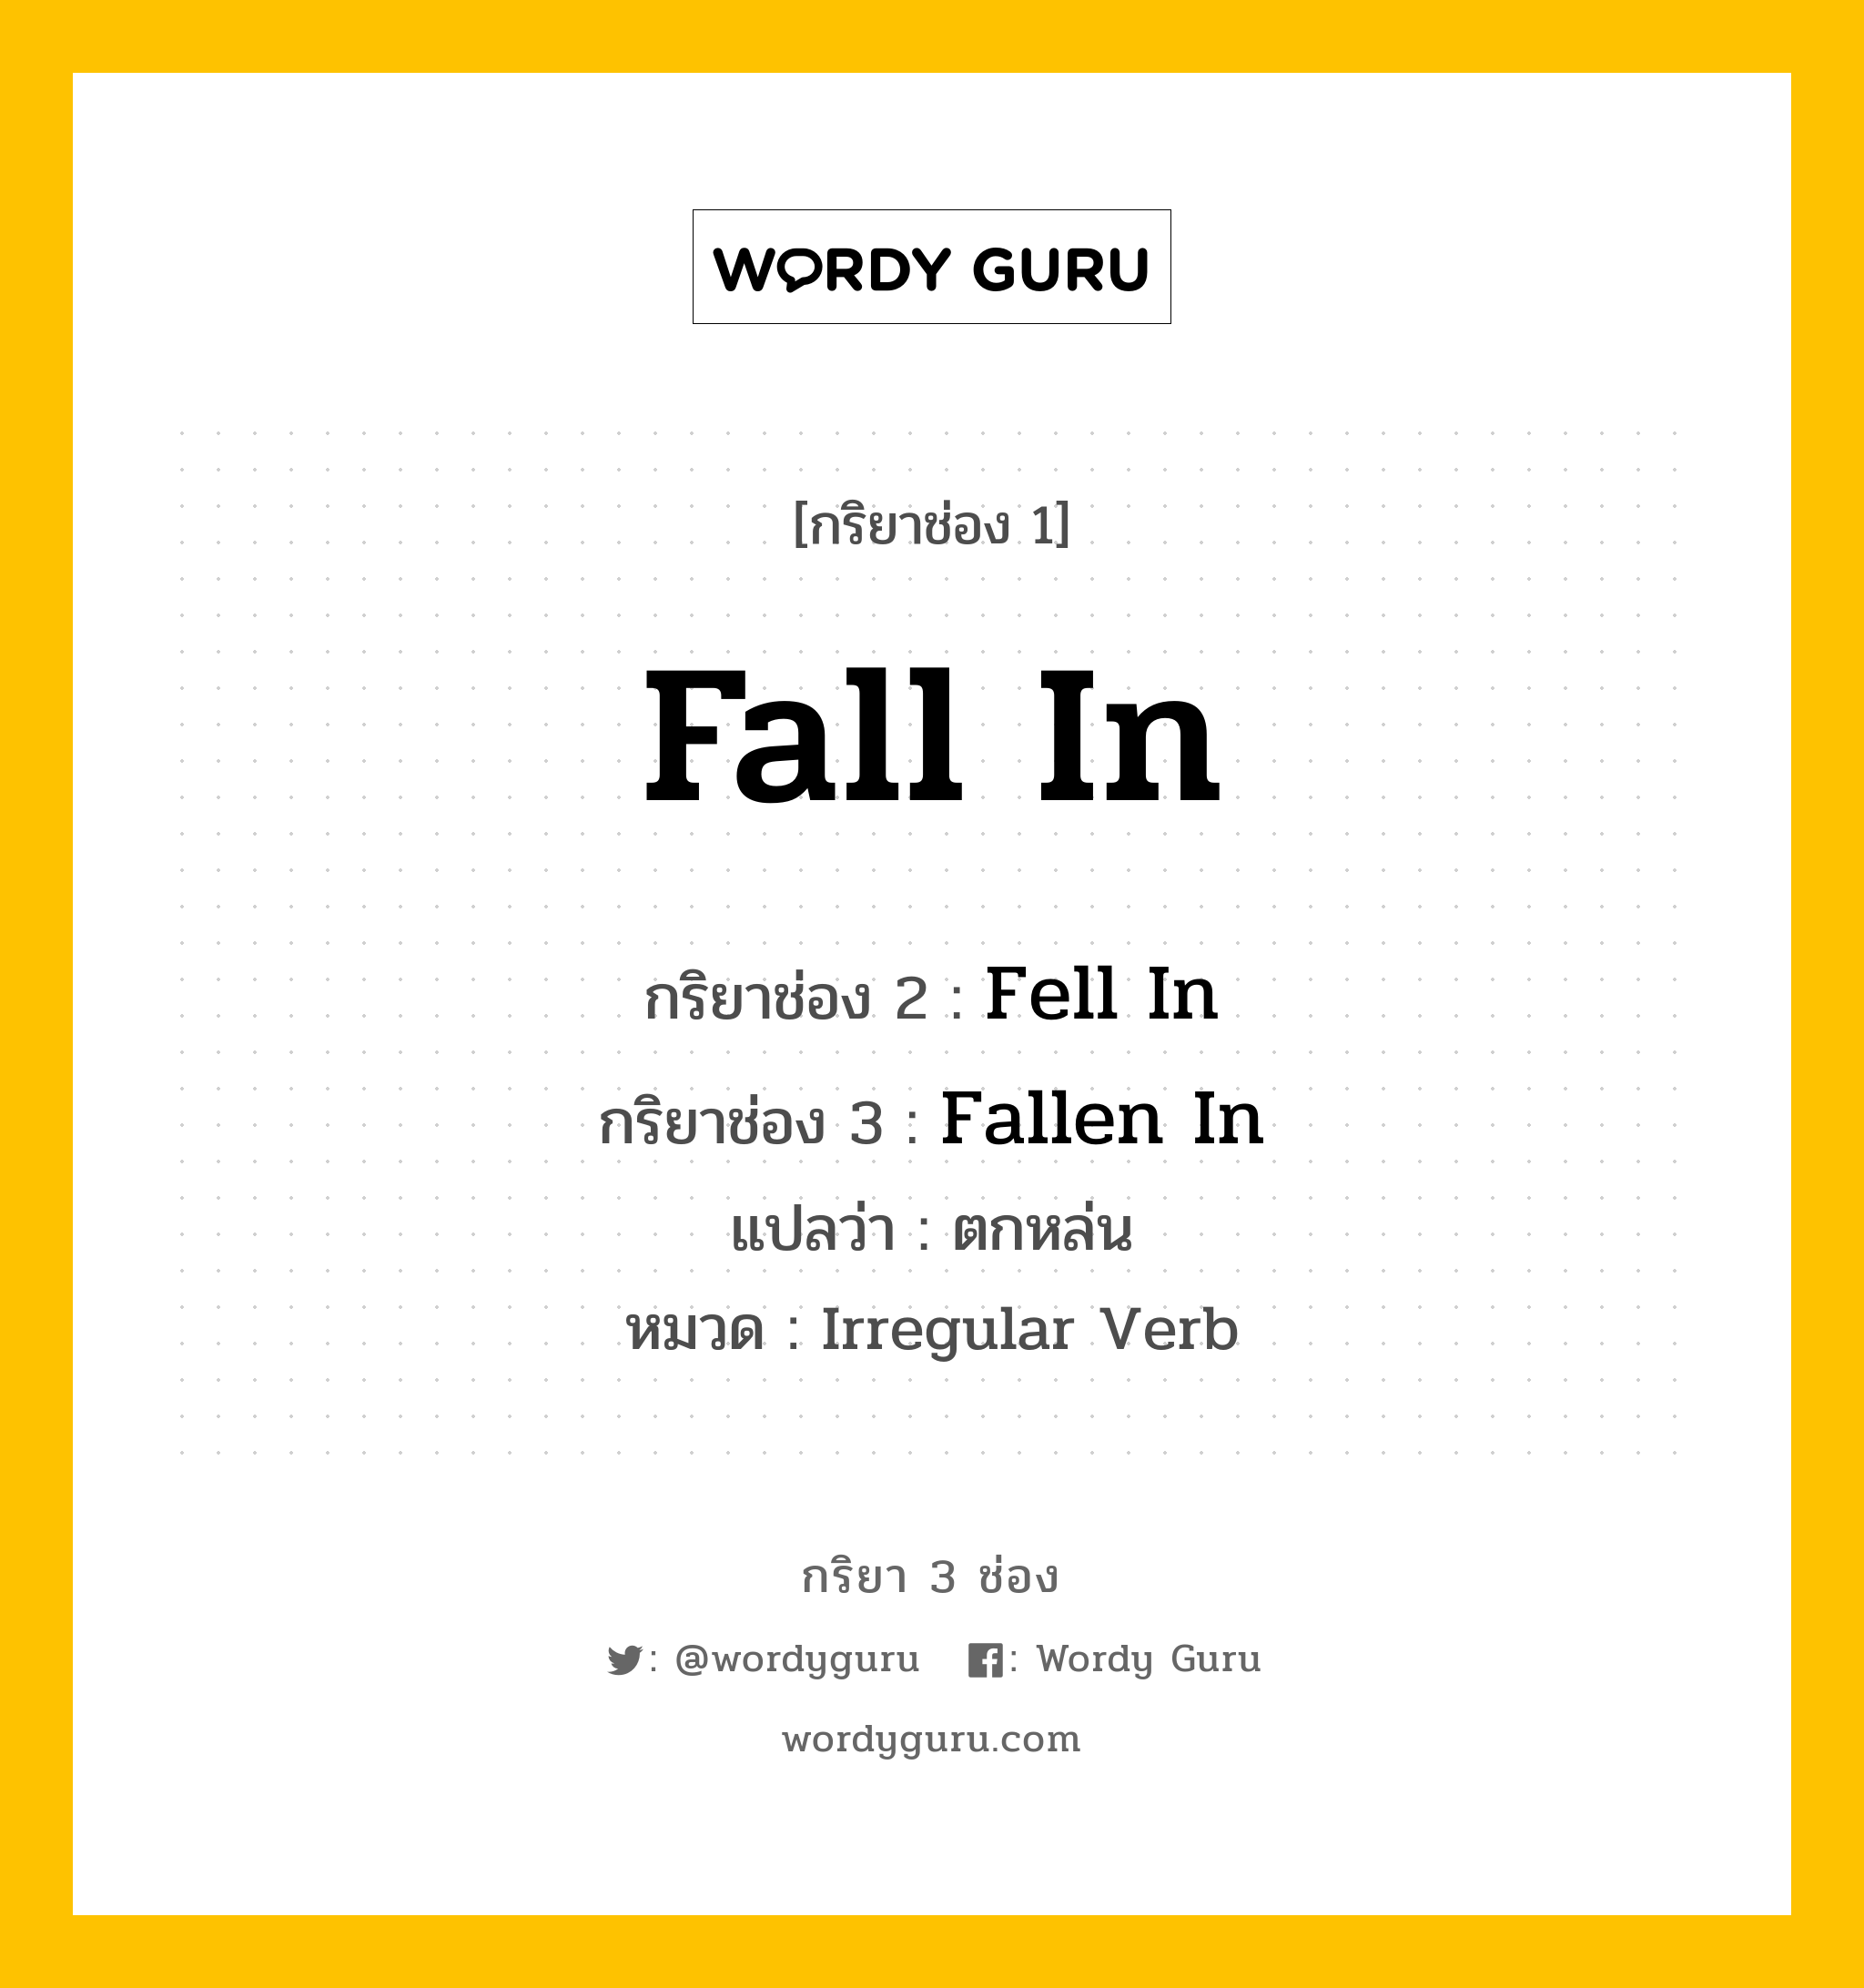 กริยา 3 ช่อง: Fall In ช่อง 2 Fall In ช่อง 3 คืออะไร, กริยาช่อง 1 Fall In กริยาช่อง 2 Fell In กริยาช่อง 3 Fallen In แปลว่า ตกหล่น หมวด Irregular Verb หมวด Irregular Verb